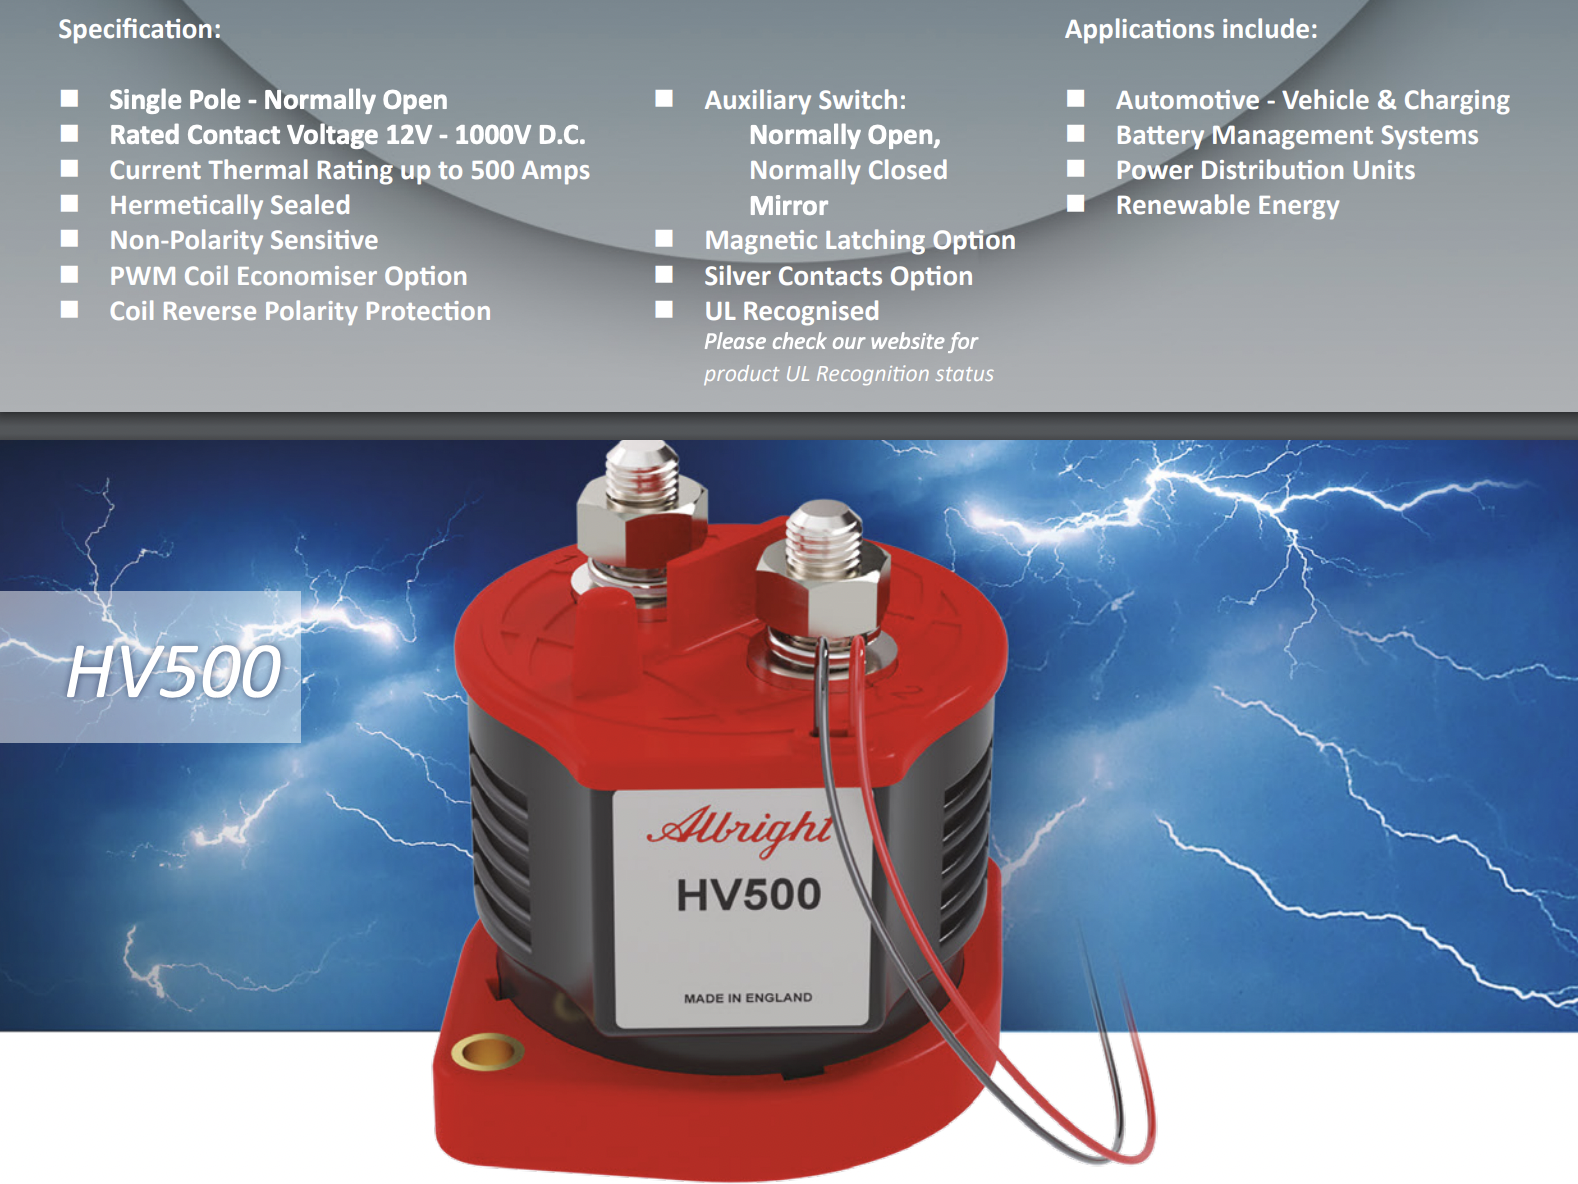 High Voltage Contactors now 1000V